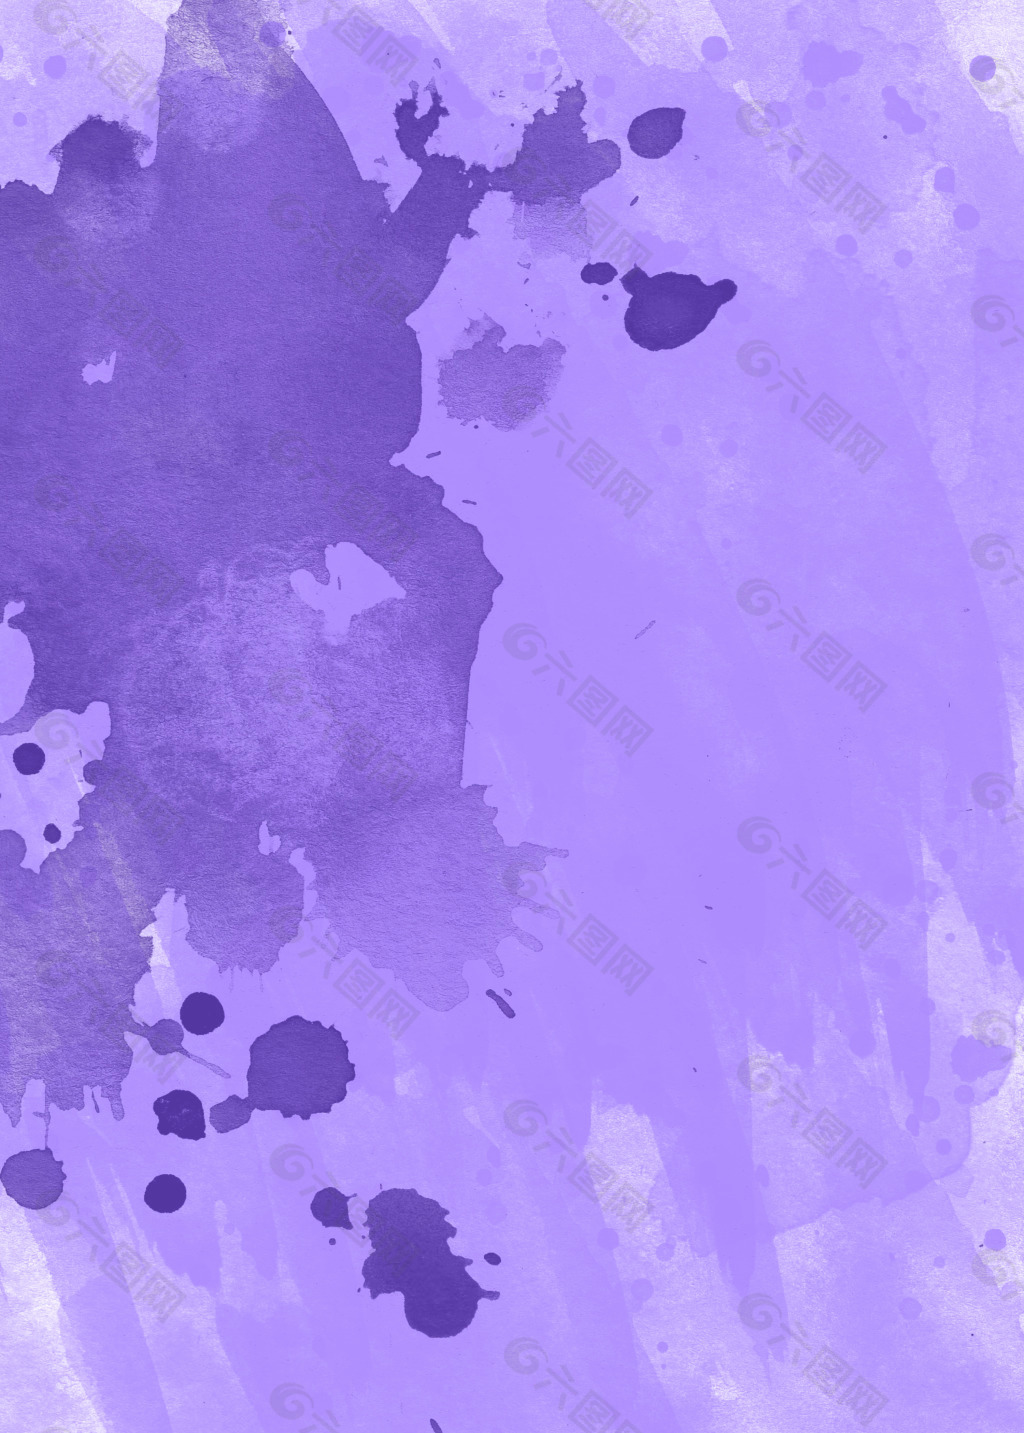 高清紫色墨点图案背景jpg素材